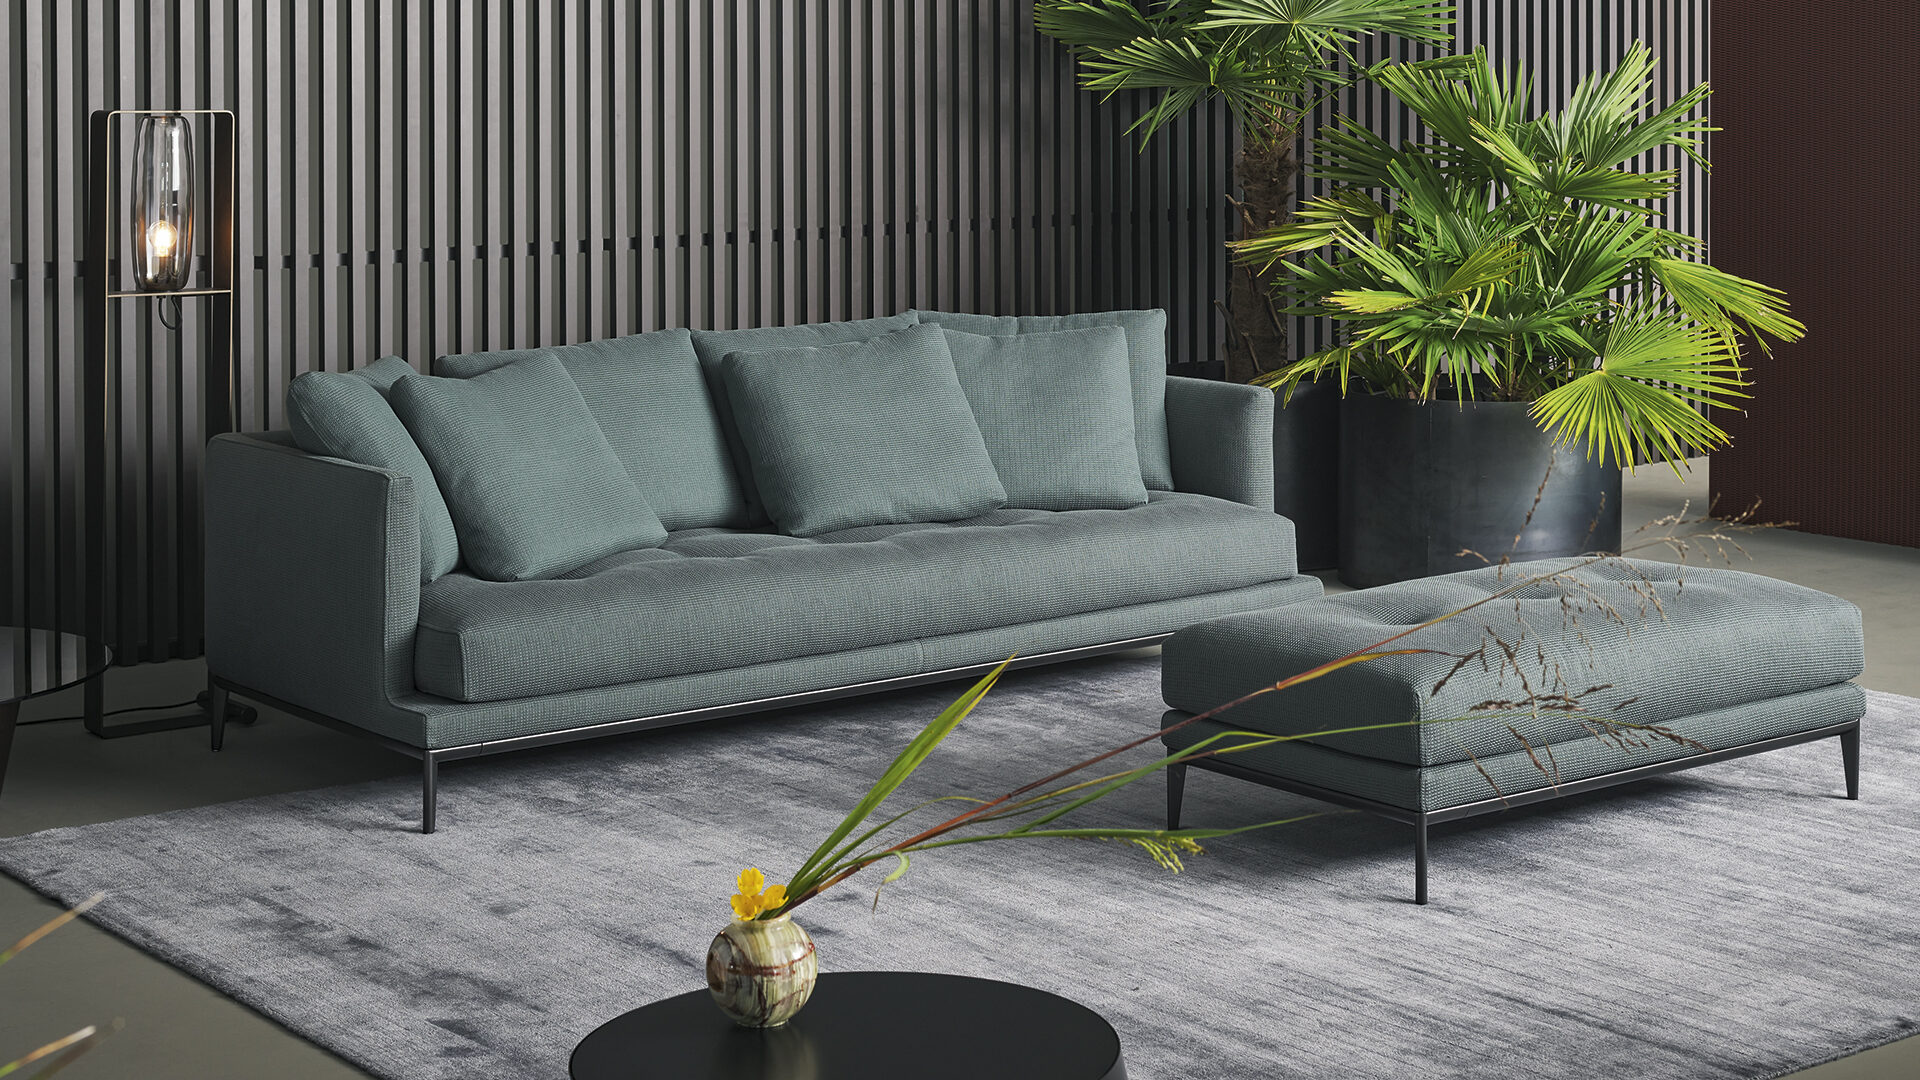 Soft Island: modern contemporary sofa